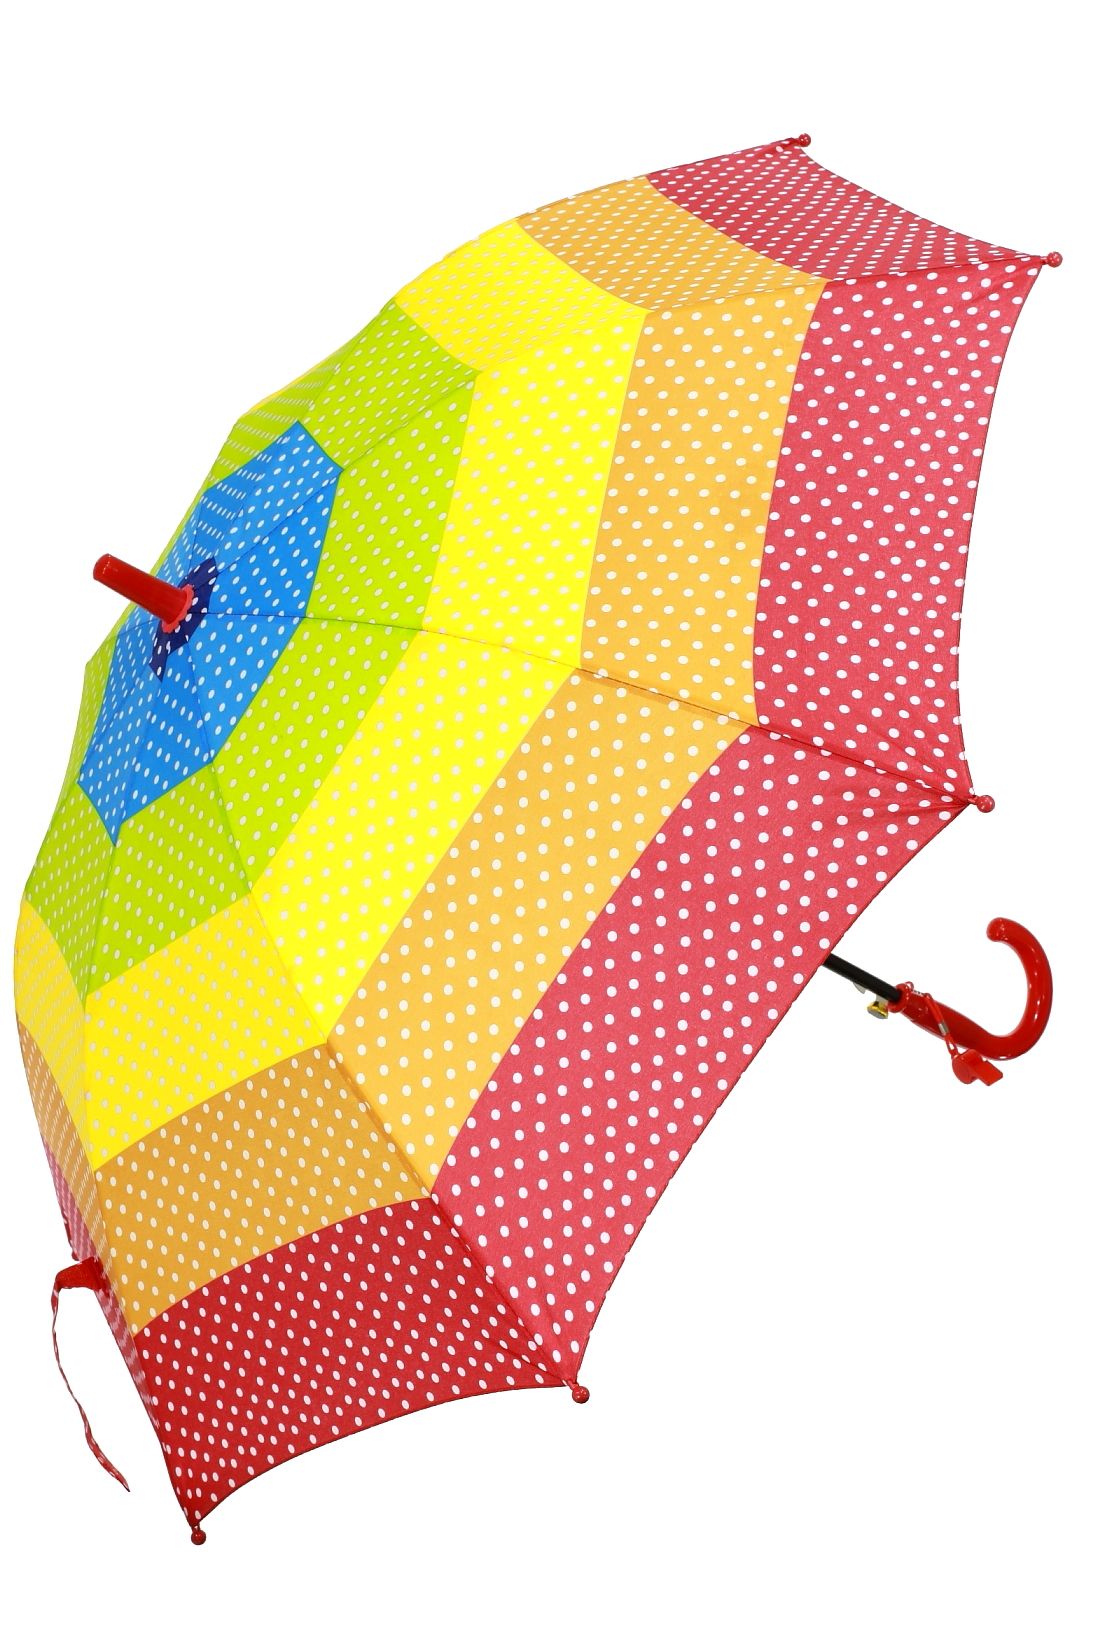 Фото детских зонтиков: для мальчиков и девочек, фиксики и прозрачные для детей, складной и трость от солнца